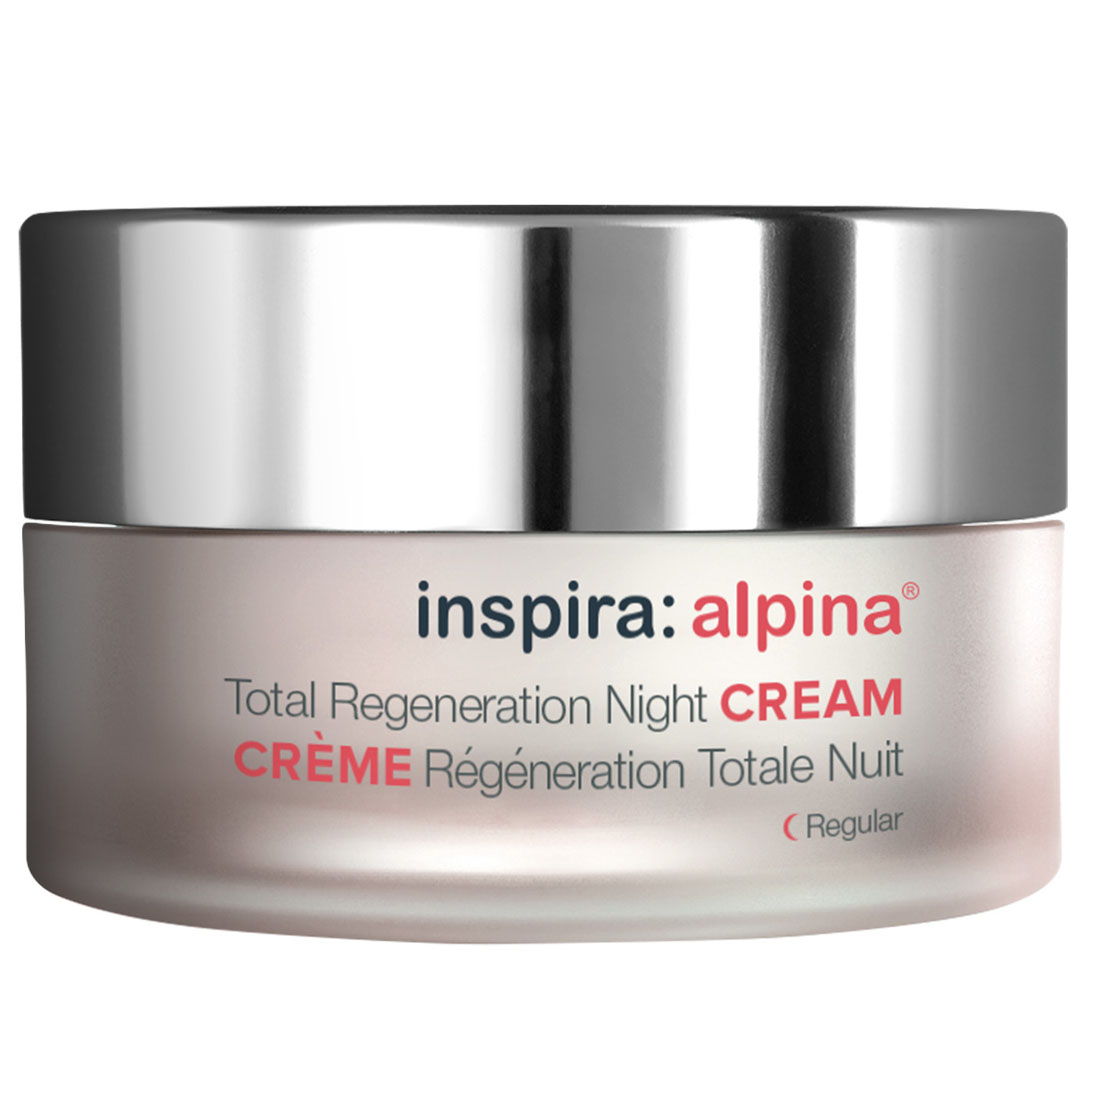 Inspira Cosmetics Легкий ночной регенерирующий лифтинг-крем Total Regeneration Night Cream Regular, 50 мл (Inspira Cosmetics, Alpina) цена и фото